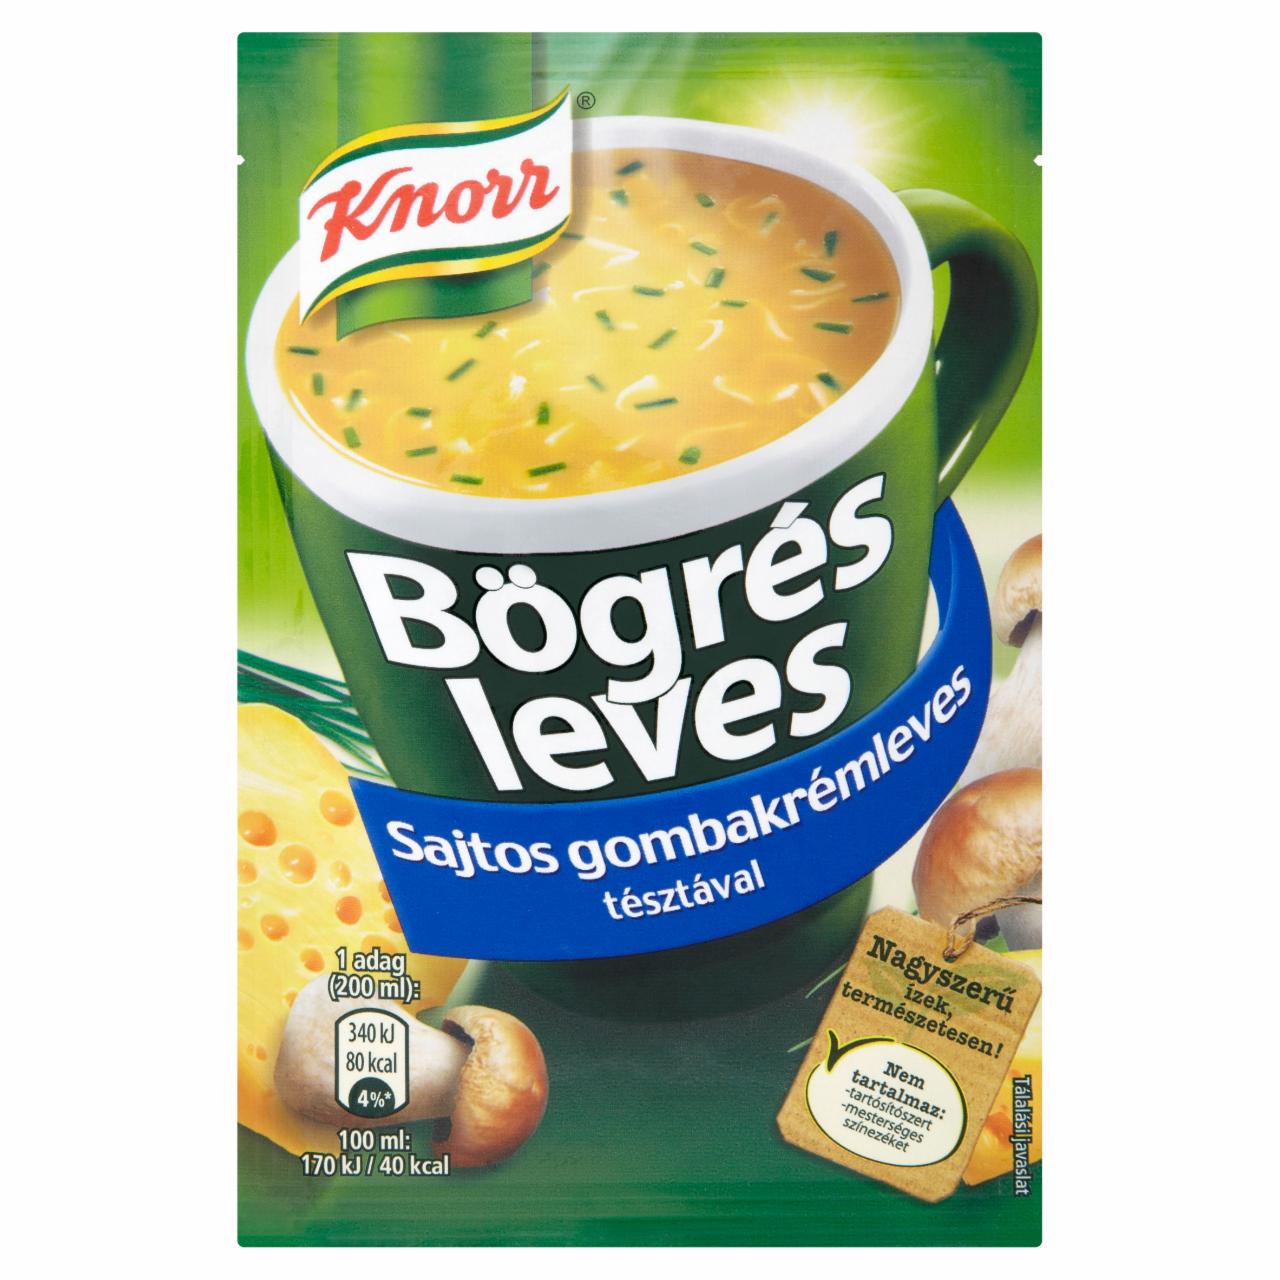 Képek - Knorr Bögrés Leves sajtos gombakrémleves tésztával 17 g